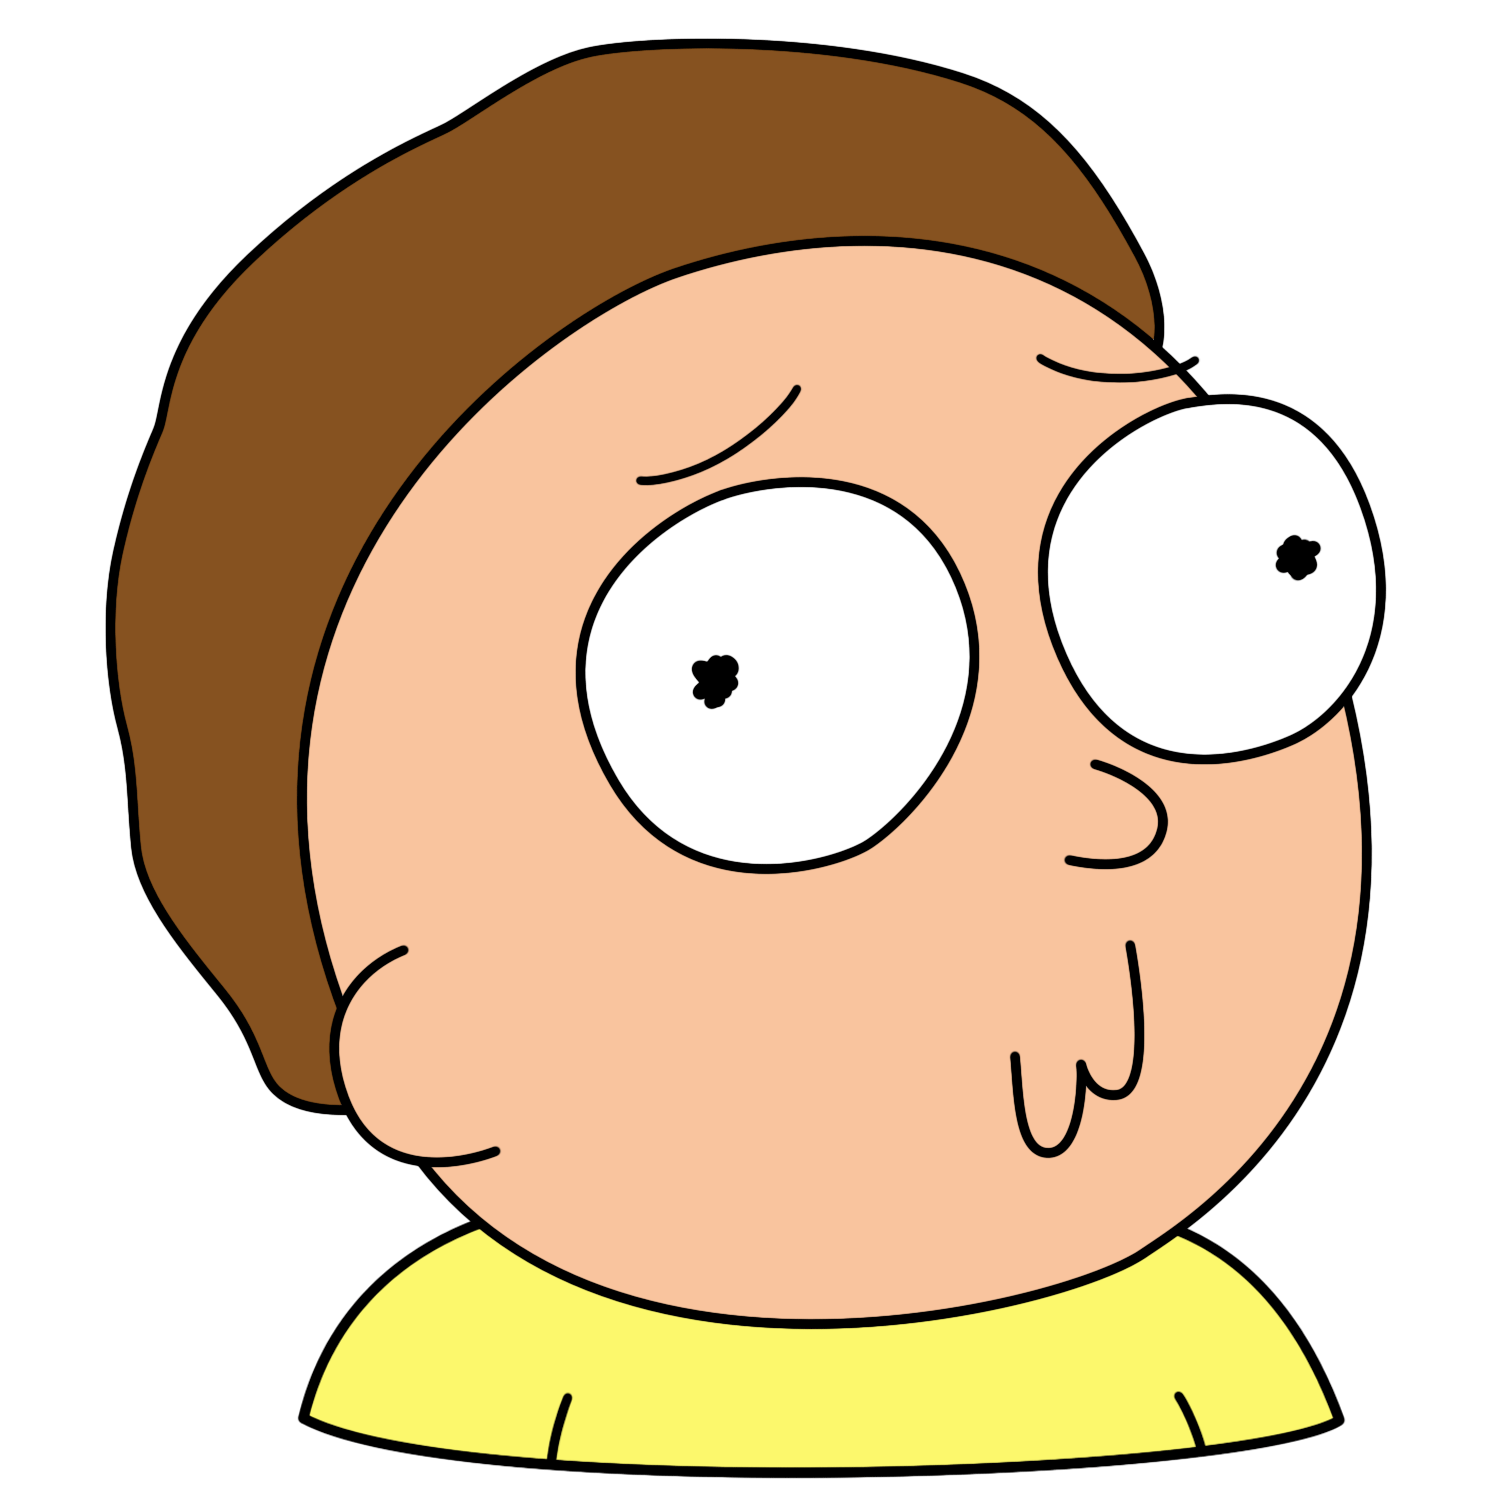 Morty Confused Face - KibrisPDR